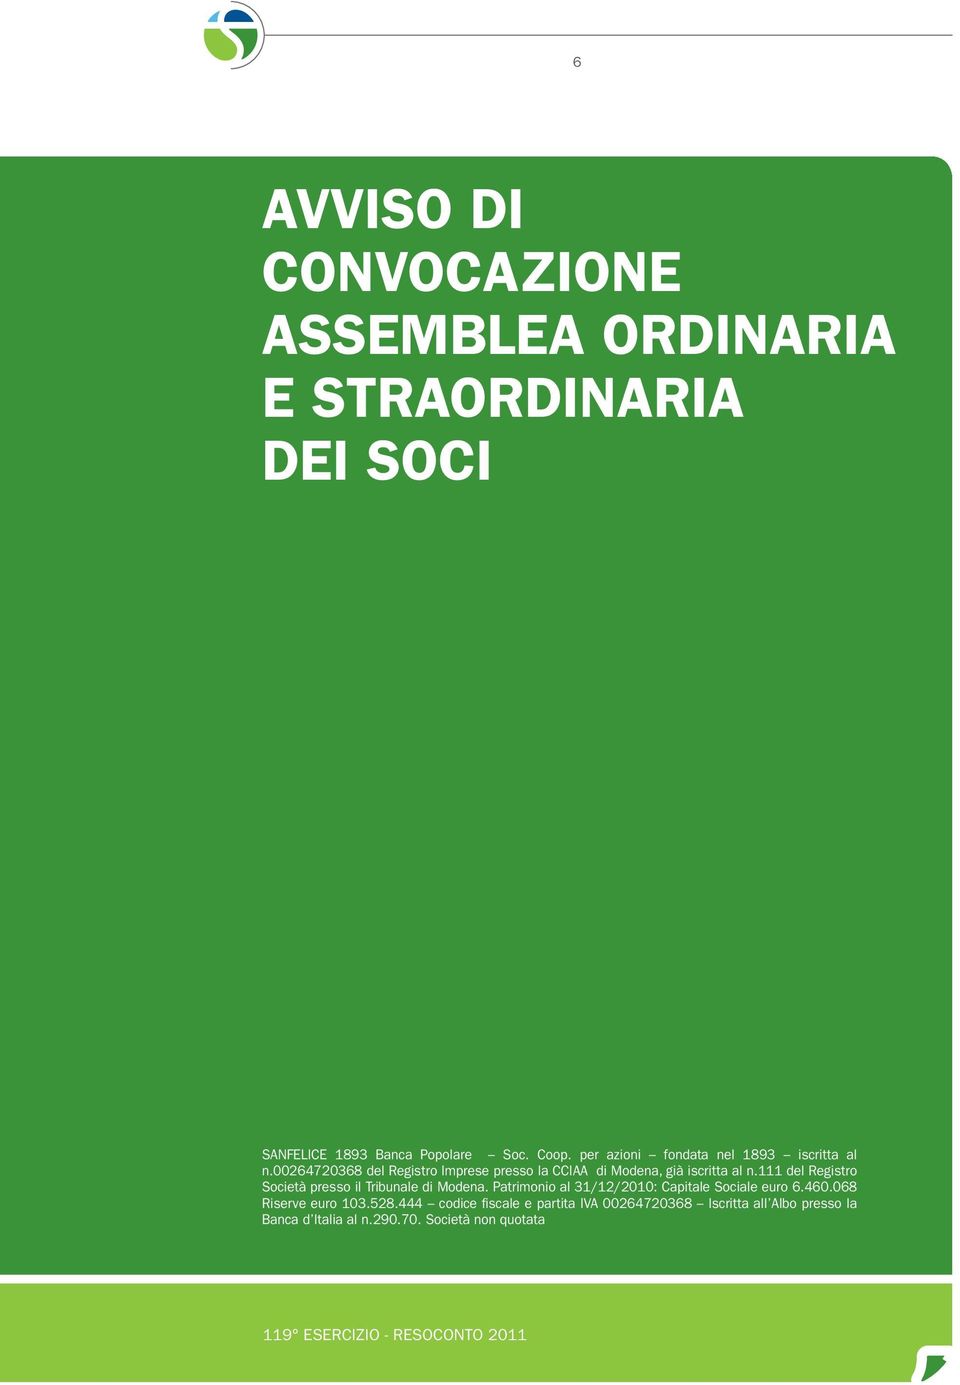 111 del Registro Società presso il Tribunale di Modena. Patrimonio al 31/12/2010: Capitale Sociale euro 6.460.